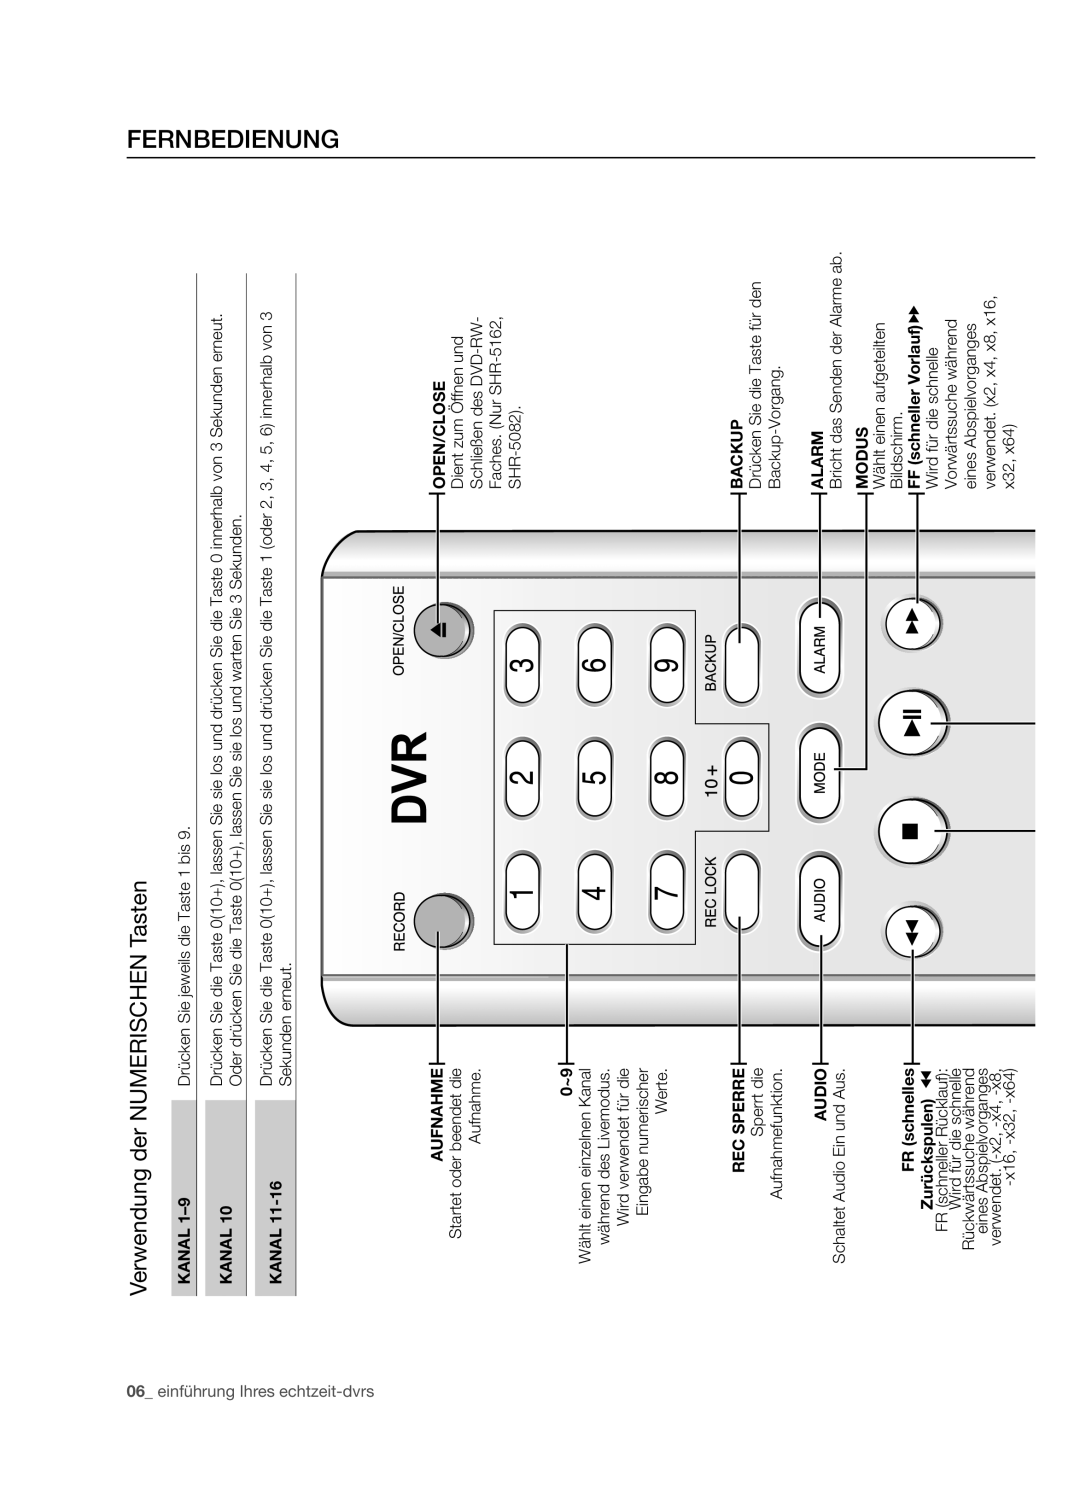 Samsung SHR-5162P Fernbedienung, Verwendung der NUMERISCHEN Tasten, einführung Ihres echtzeit-dvrs, Kanal, Sekunden erneut 